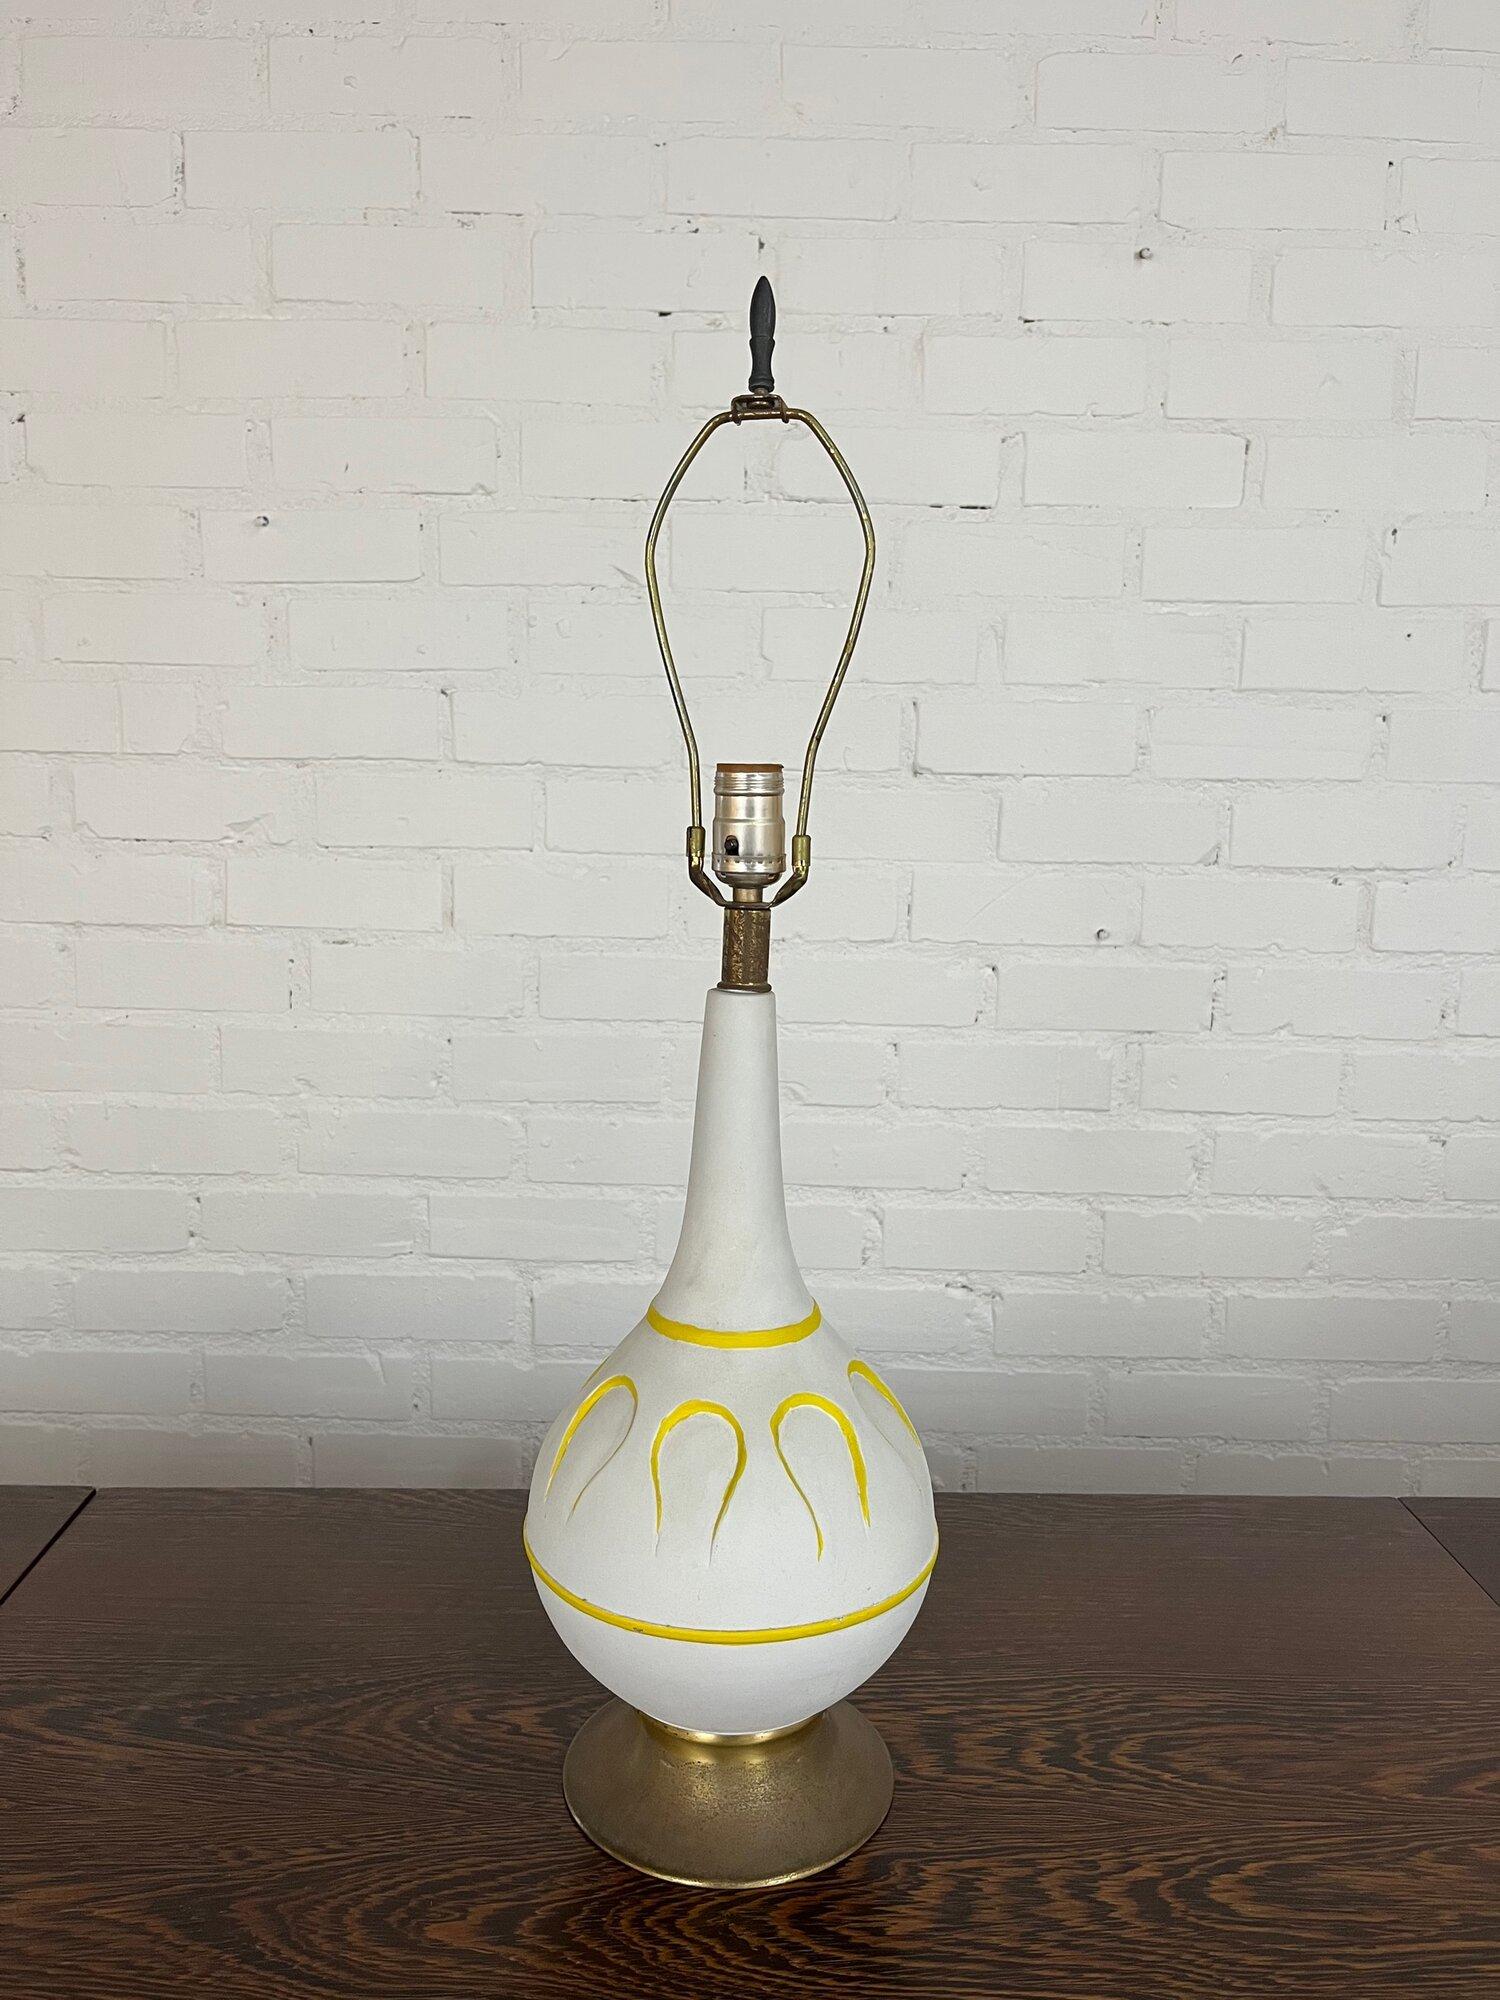 W7.5 D7.5 H29

Lampe à poser vintage avec finition blanc mat accentuée par des détails jaunes suivant le motif sur la lampe à poser. La base et les détails en laiton sont patinés. La lampe s'allume et s'éteint au cou. La lampe est entièrement